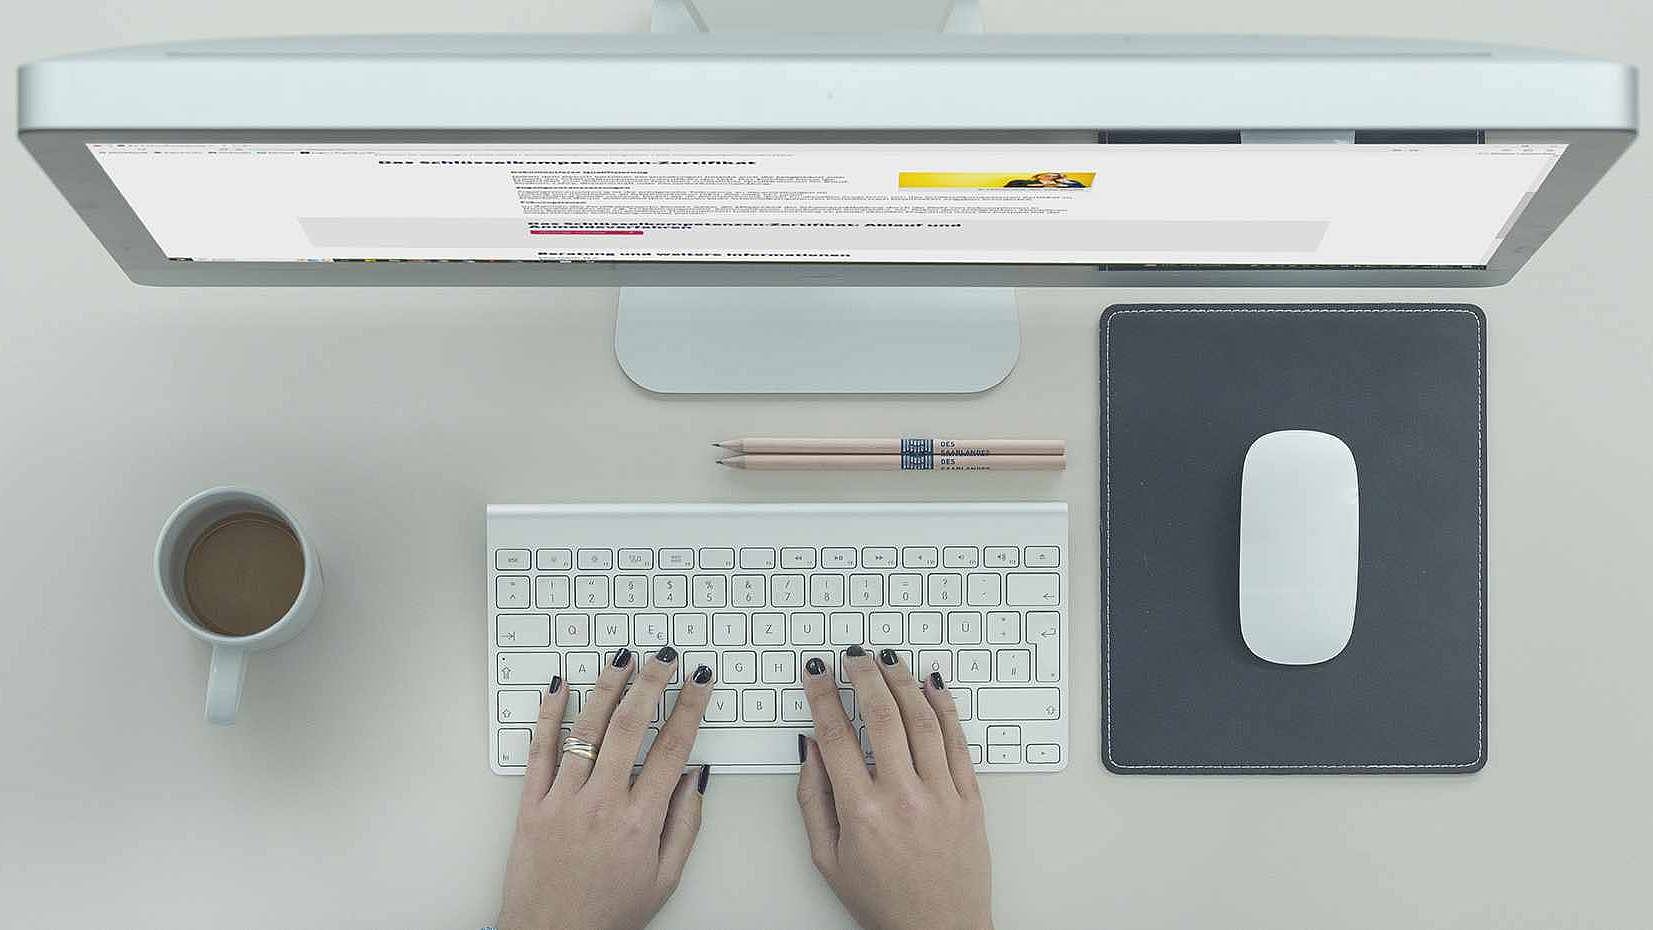 Schreibtisch mit Bildschirm, Maus, Händen an der Tastatur und Kaffeetasse, dargestellt von oben